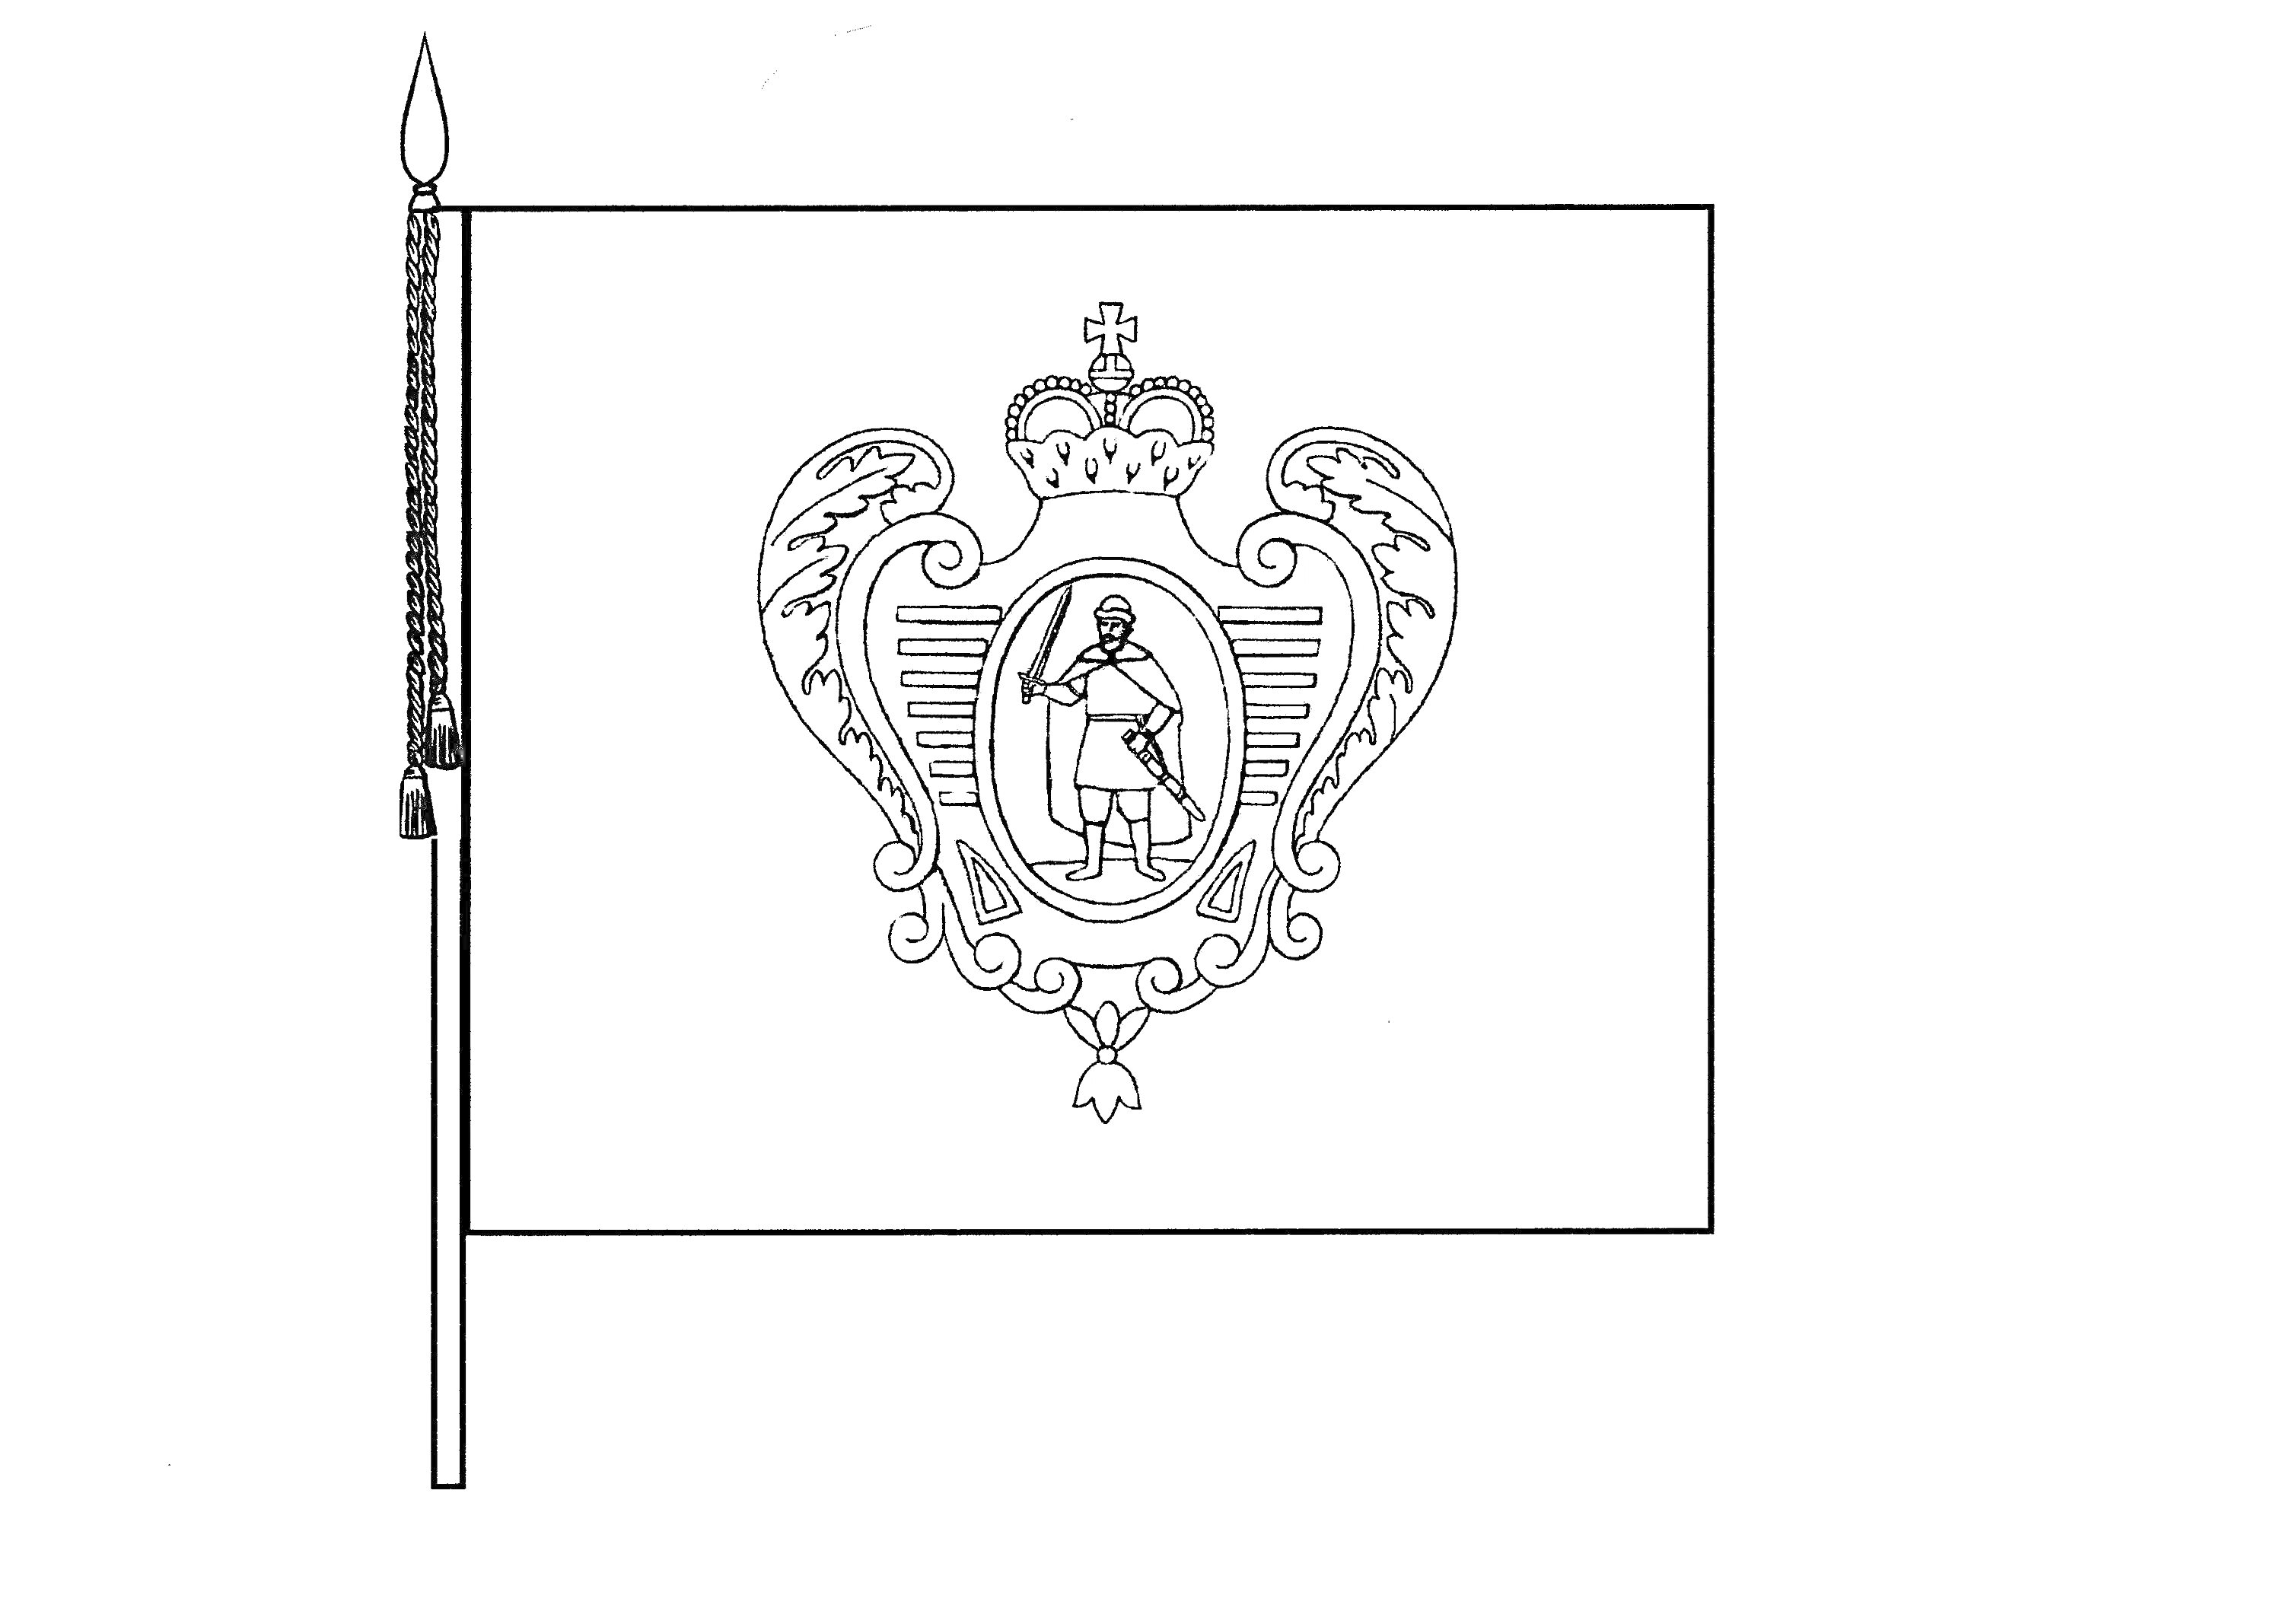 Раскраска Флаг города Рязань с гербом, на флаге копье, на гербе изображен воин со щитом на фоне короны и геральдических львов